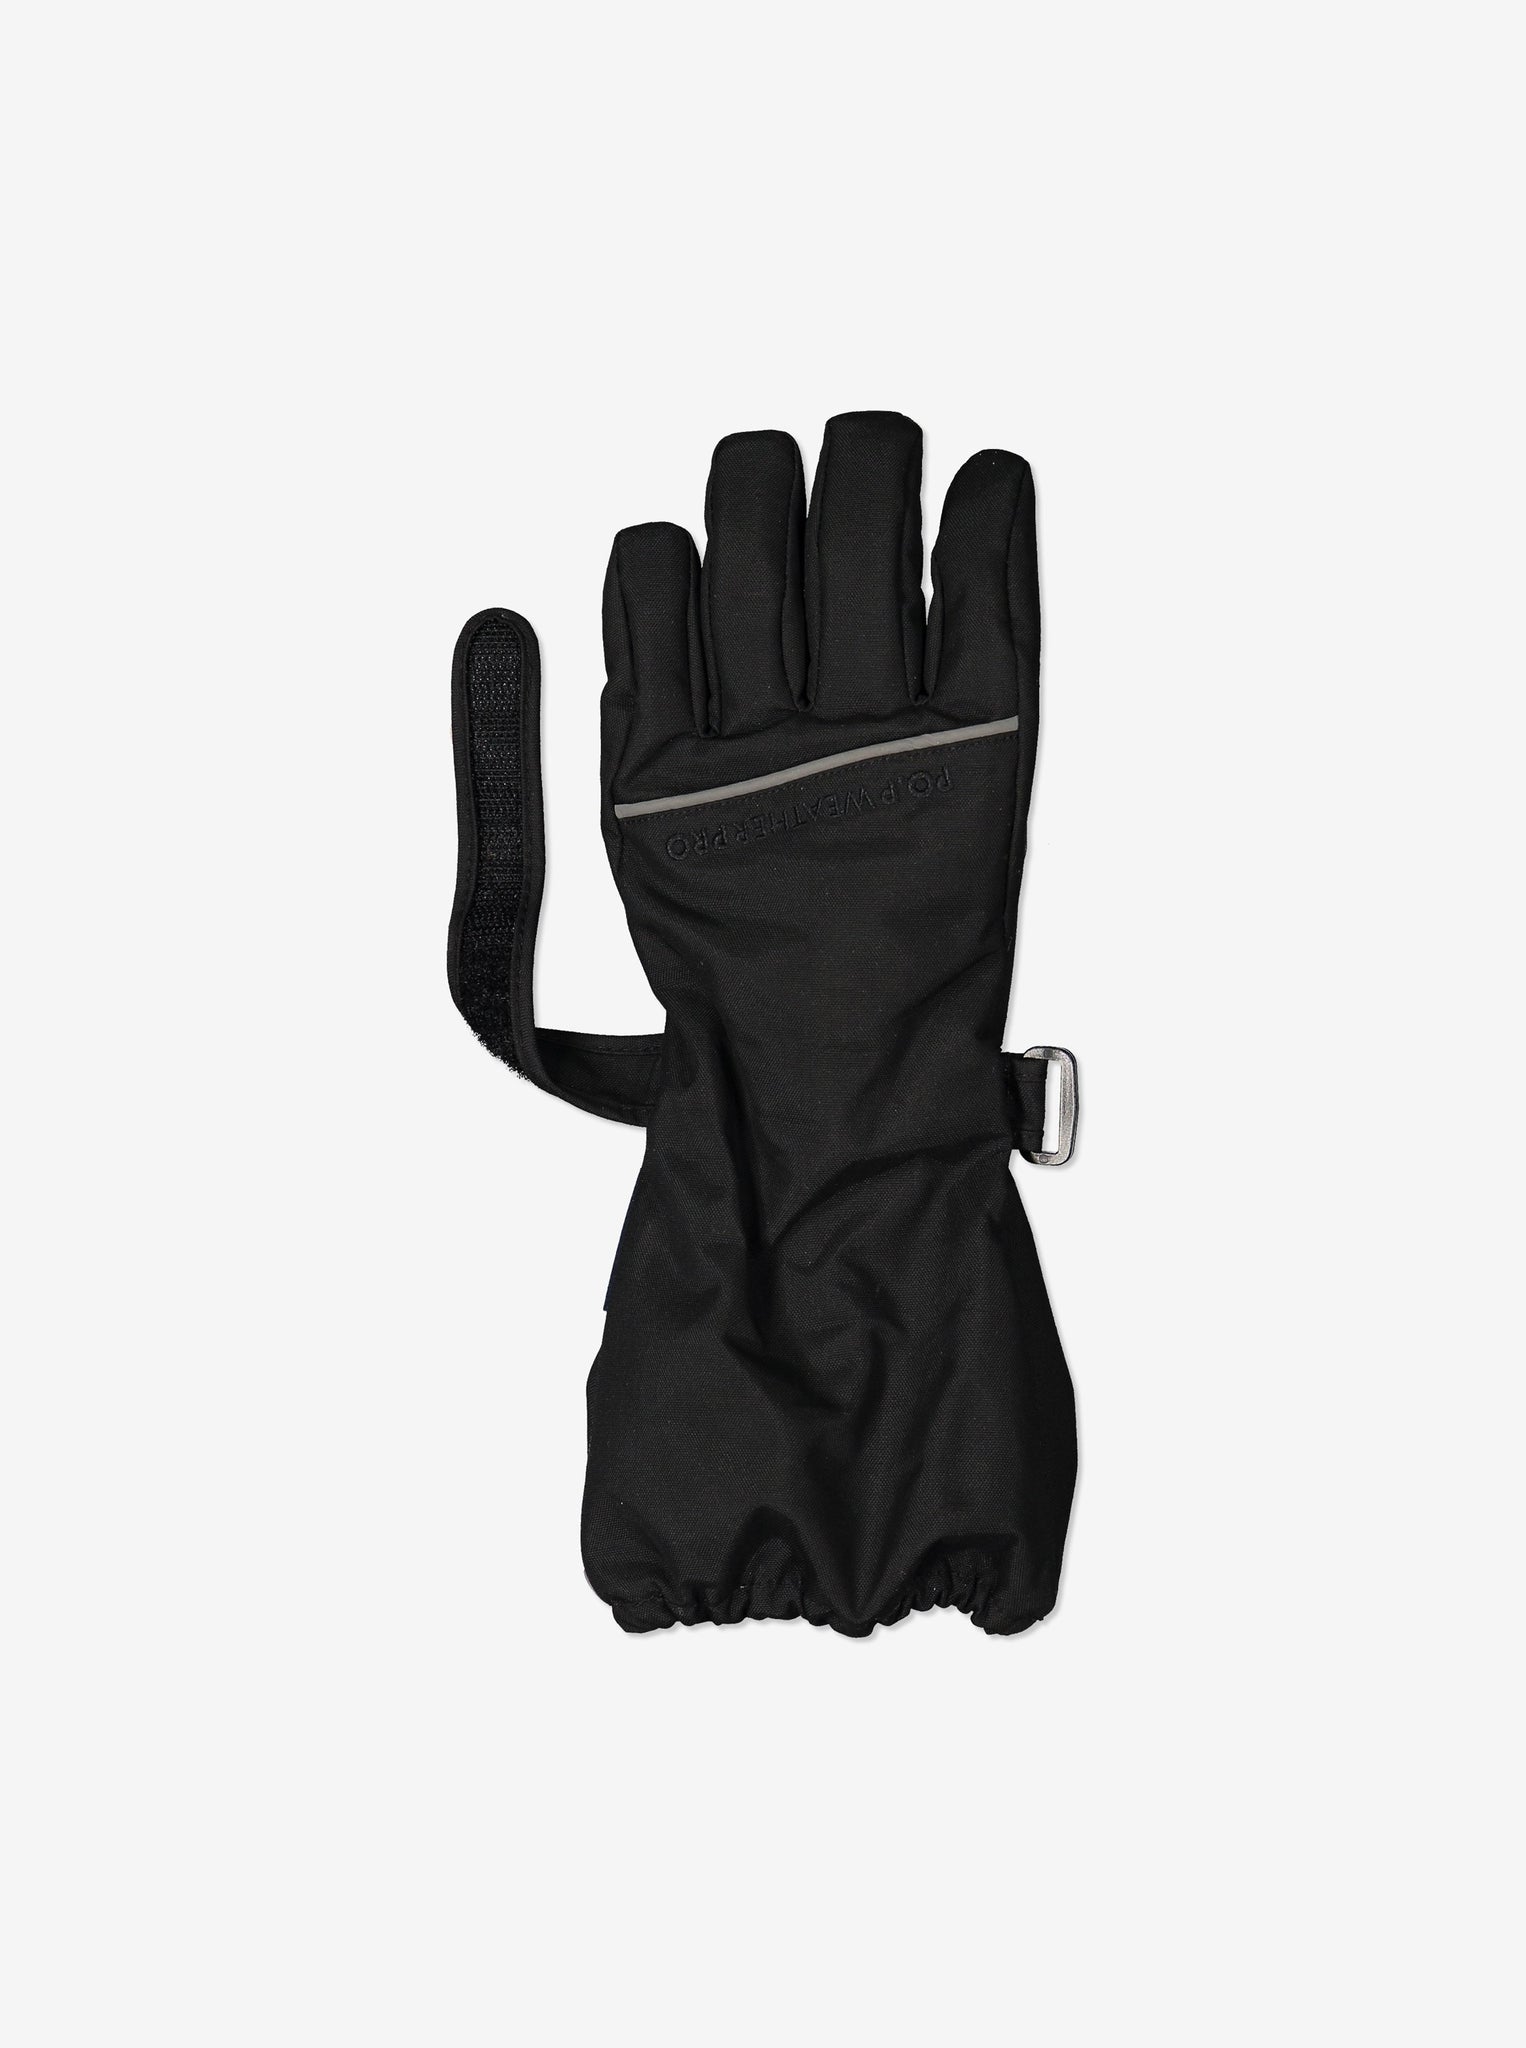 Padded Kids Ski Gloves-2-12y-Black-Boy